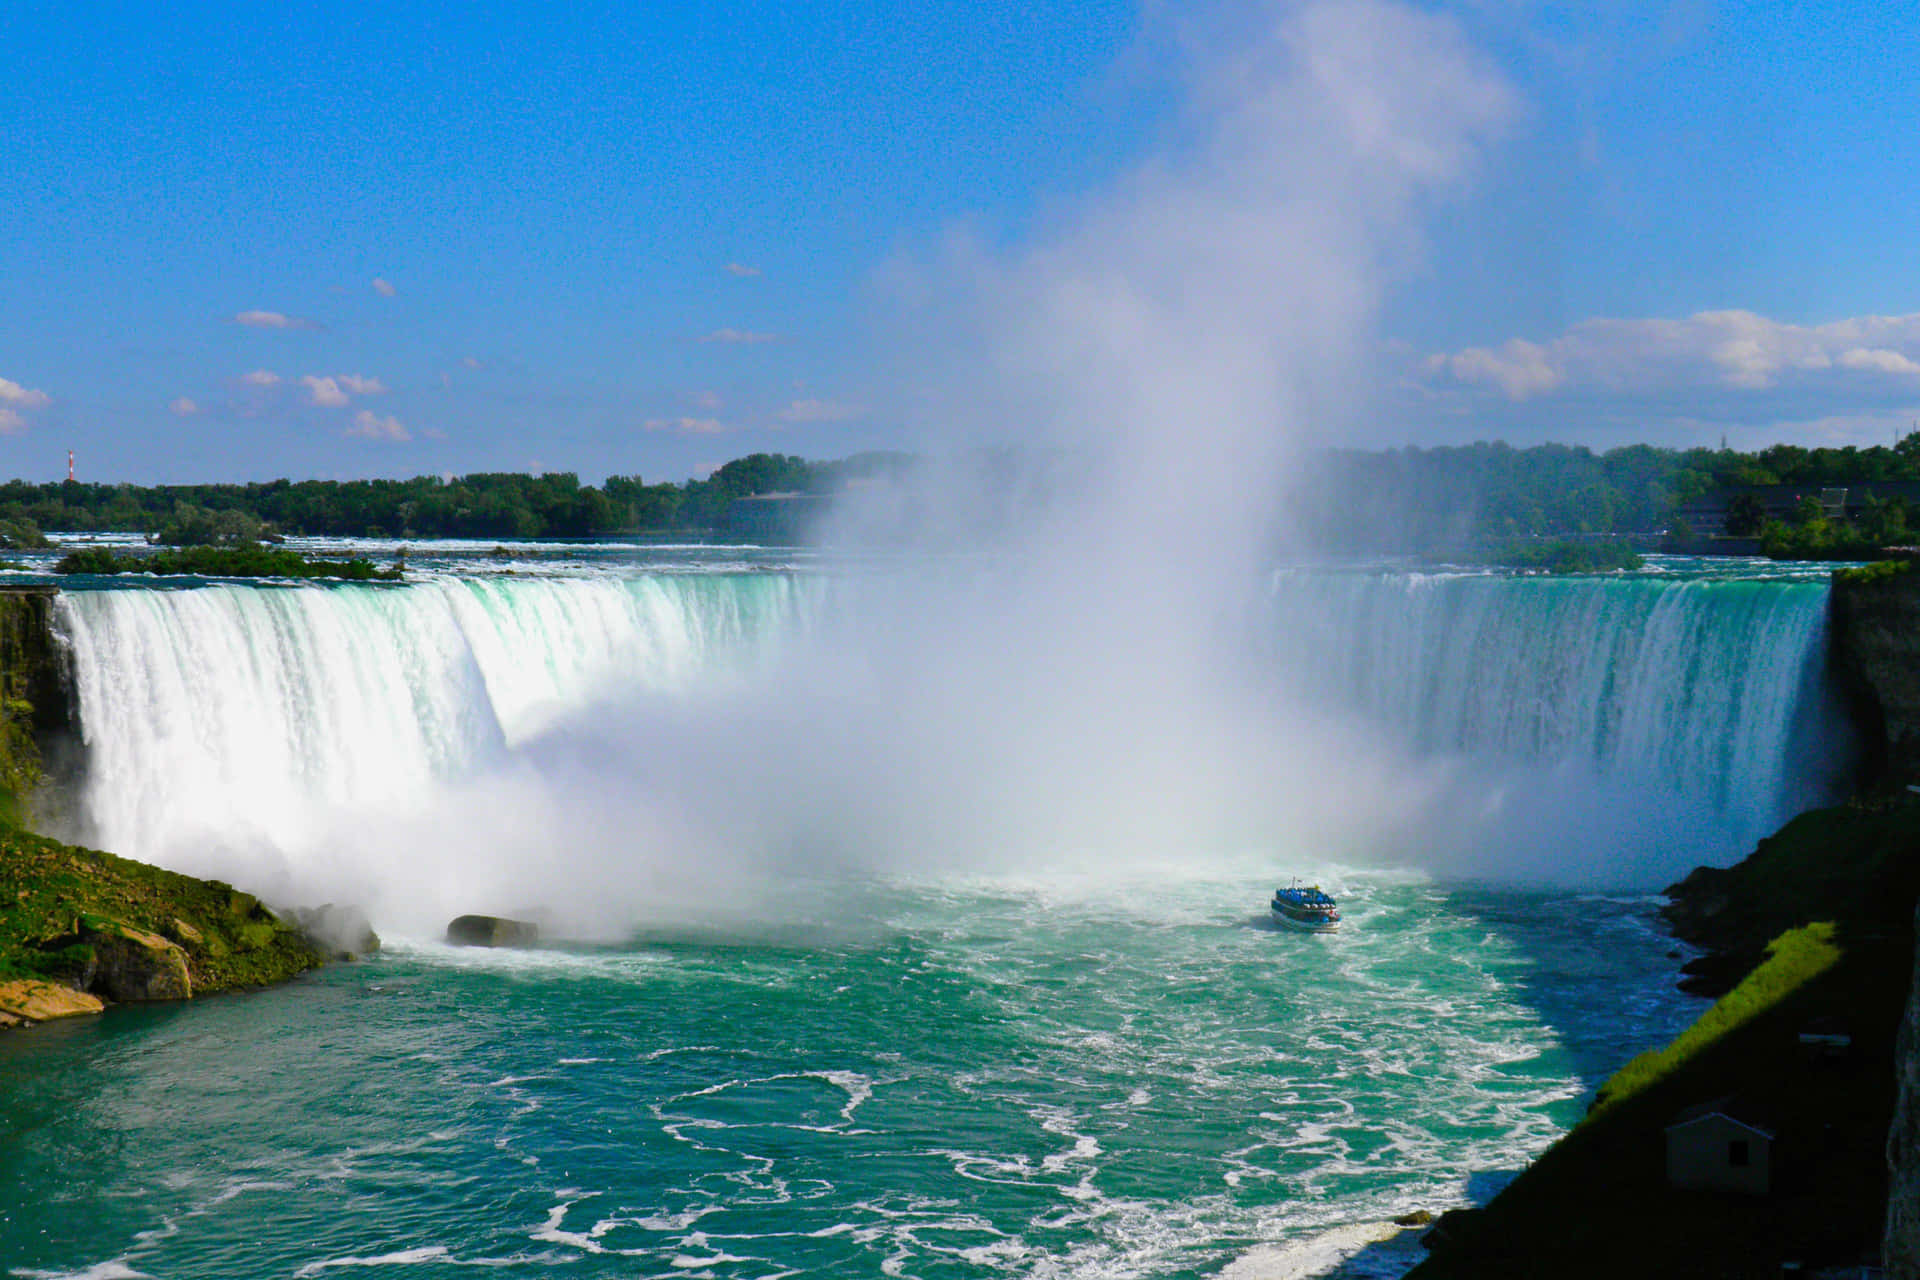 Take in the grandeur of Niagara Falls